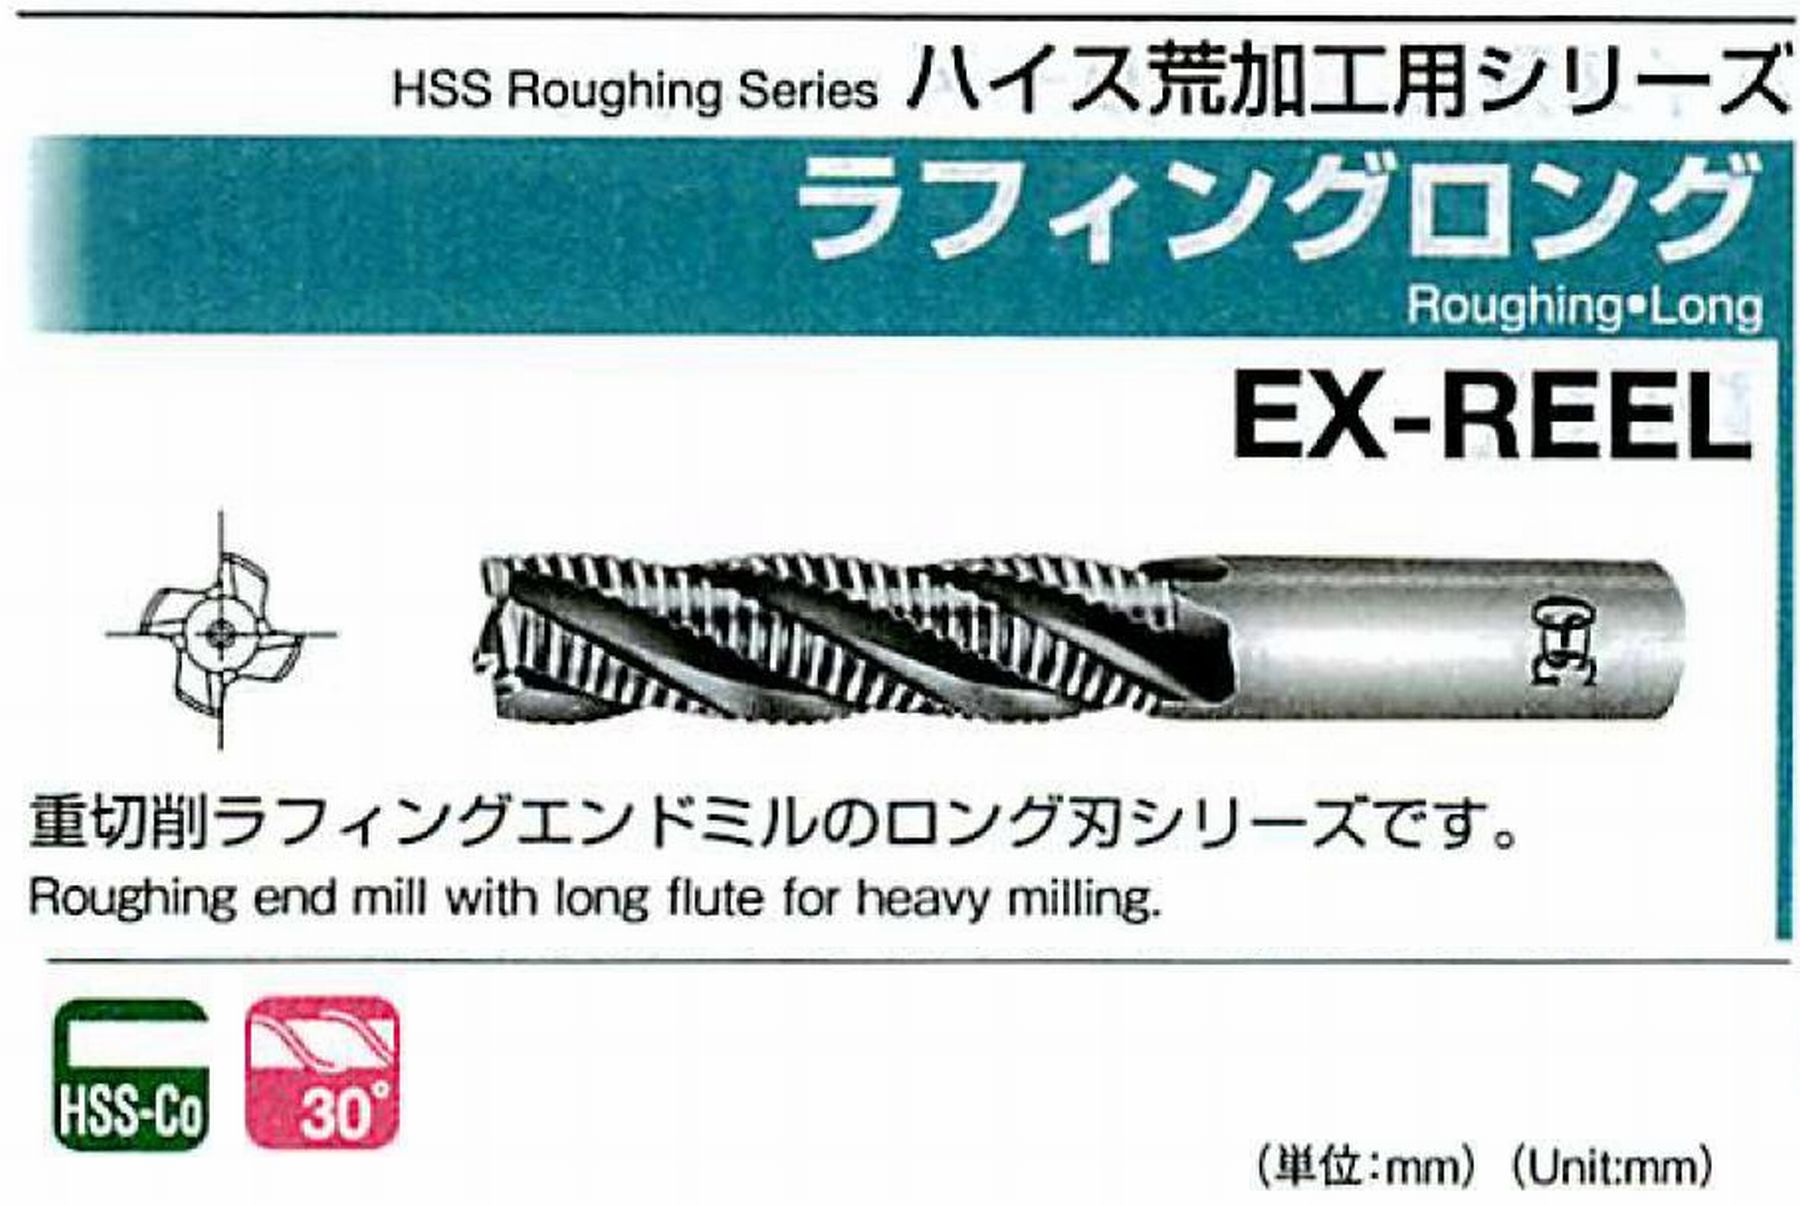 オーエスジー/OSG ラフィング ロング EX-REEL 外径50 全長252 刃長150 シャンク径42mm 刃数6